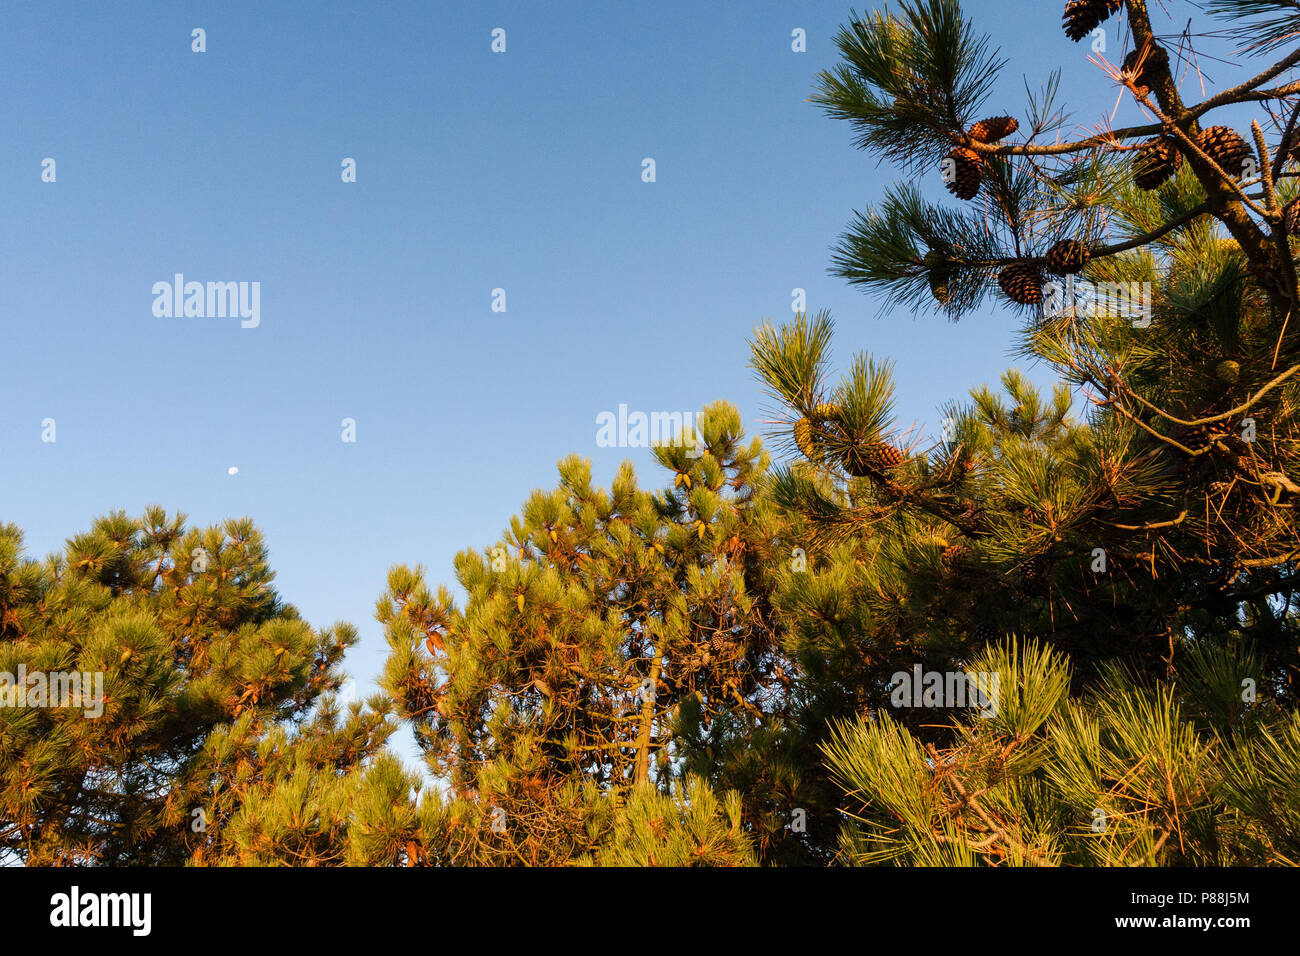 Dennenbomen met dennenappels; Pines with pinecones Stock Photo